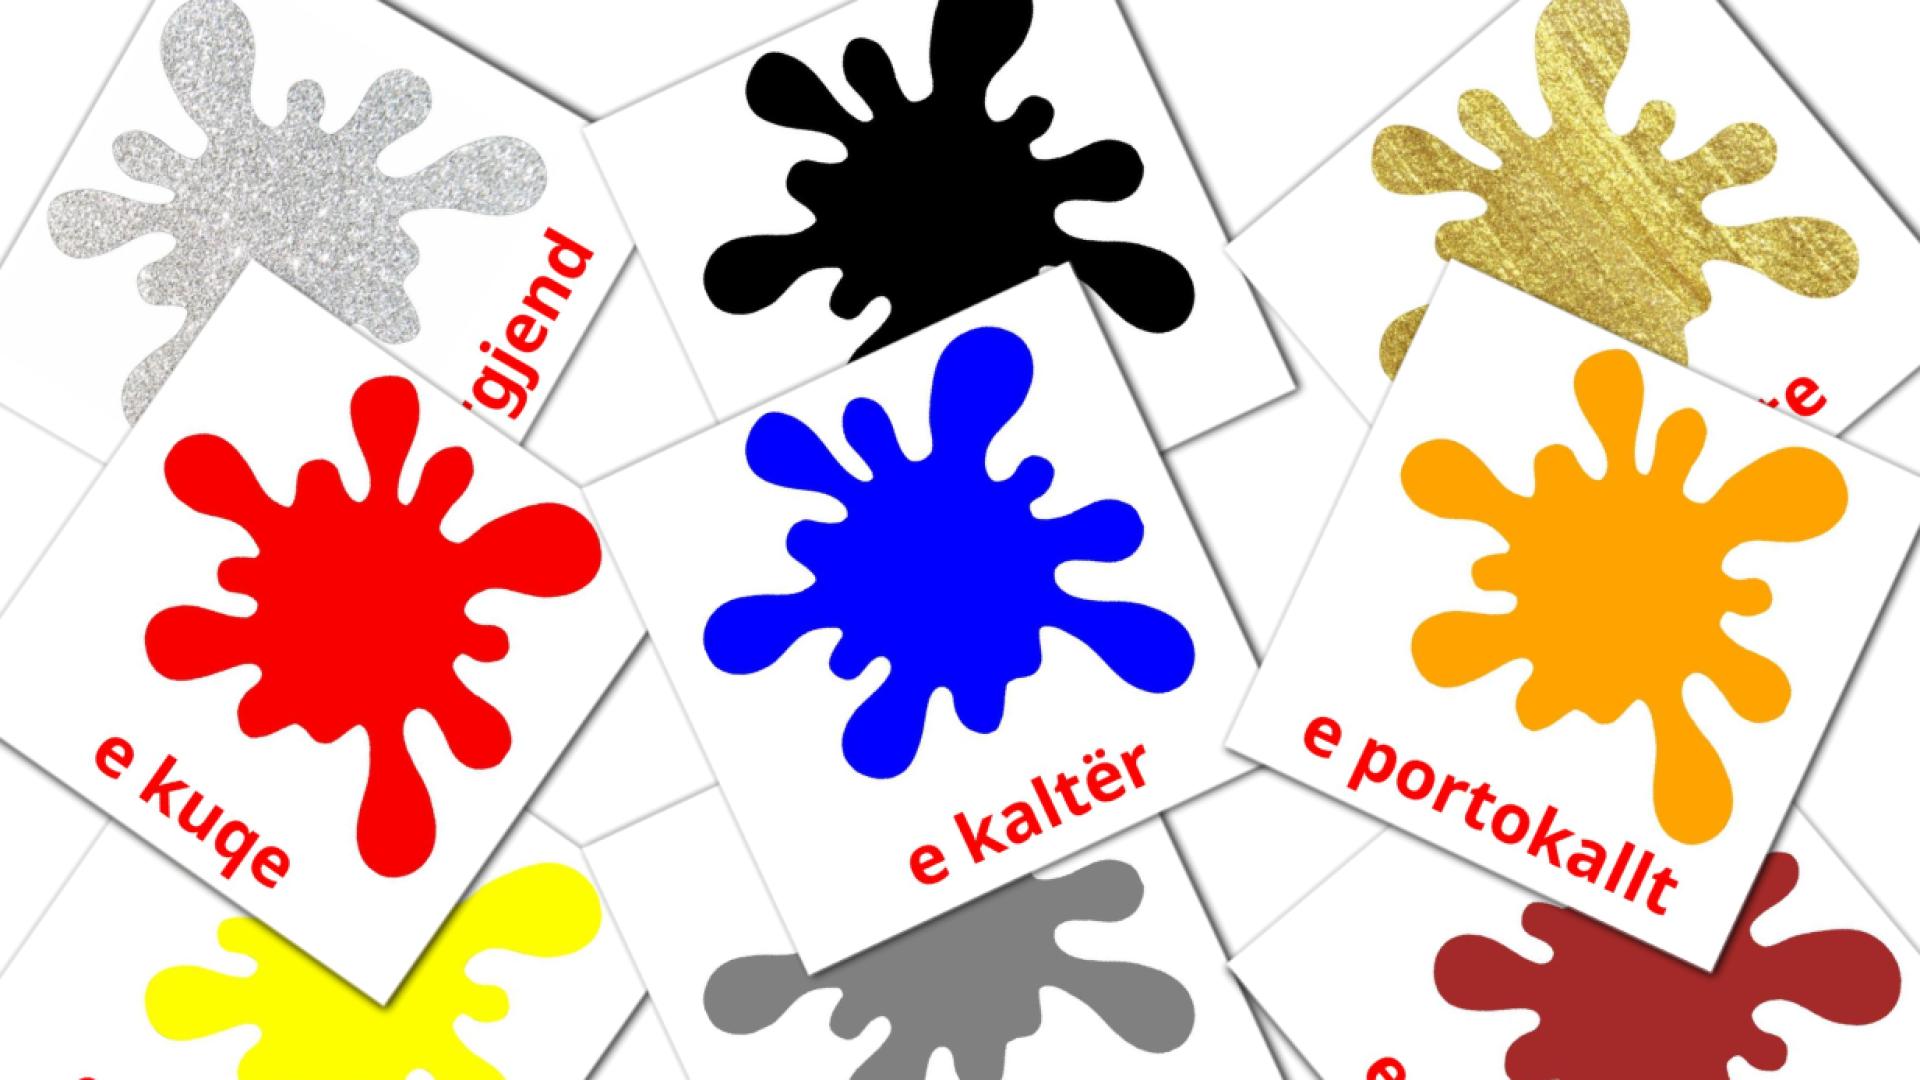 Colores - tarjetas de vocabulario en albanés